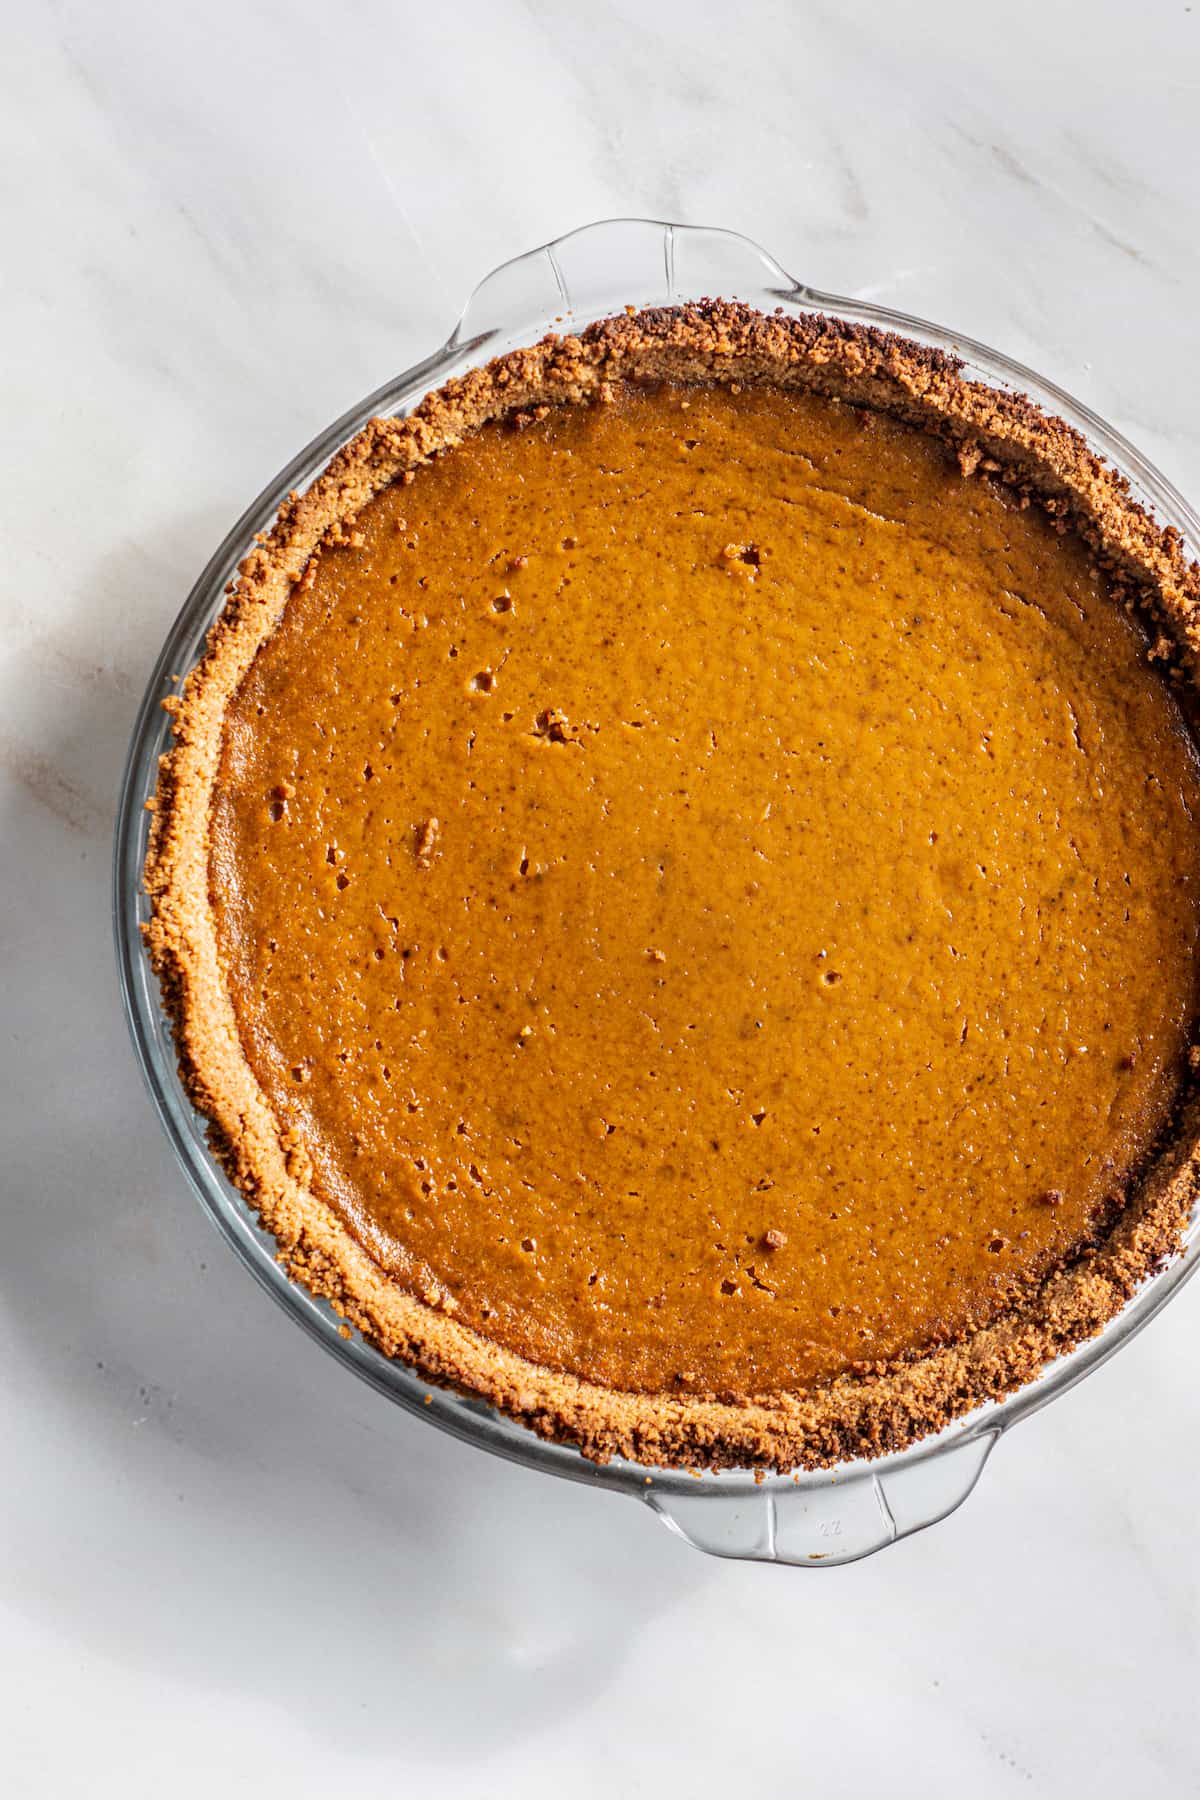 a baked pumpkin pie with a graham cracker crust.